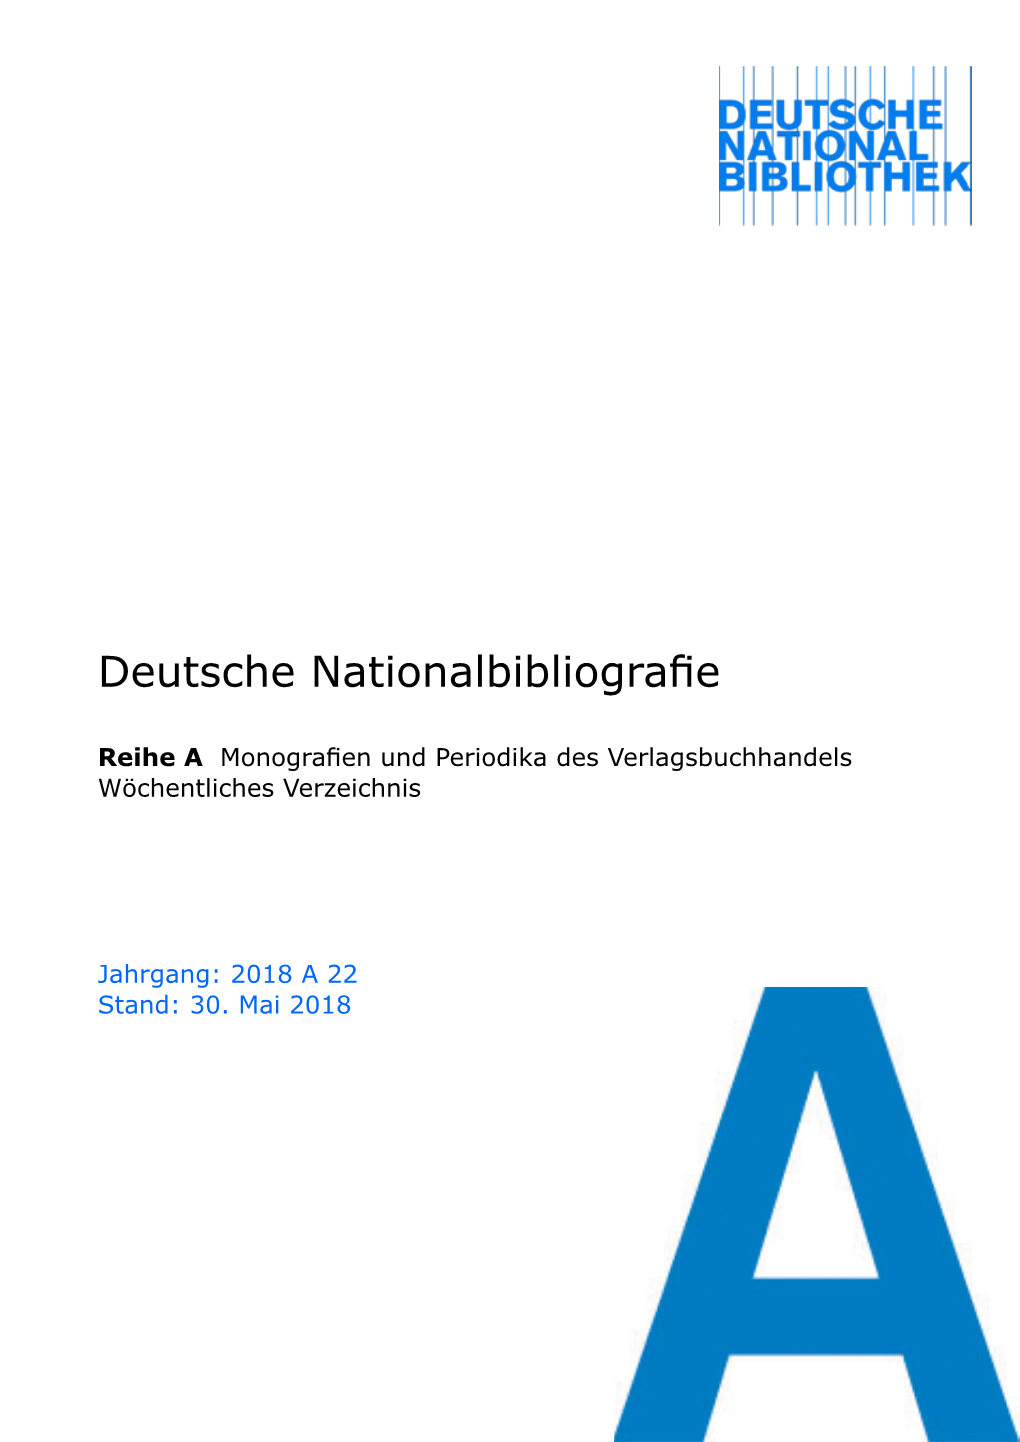 Deutsche Nationalbibliografie 2018 a 22